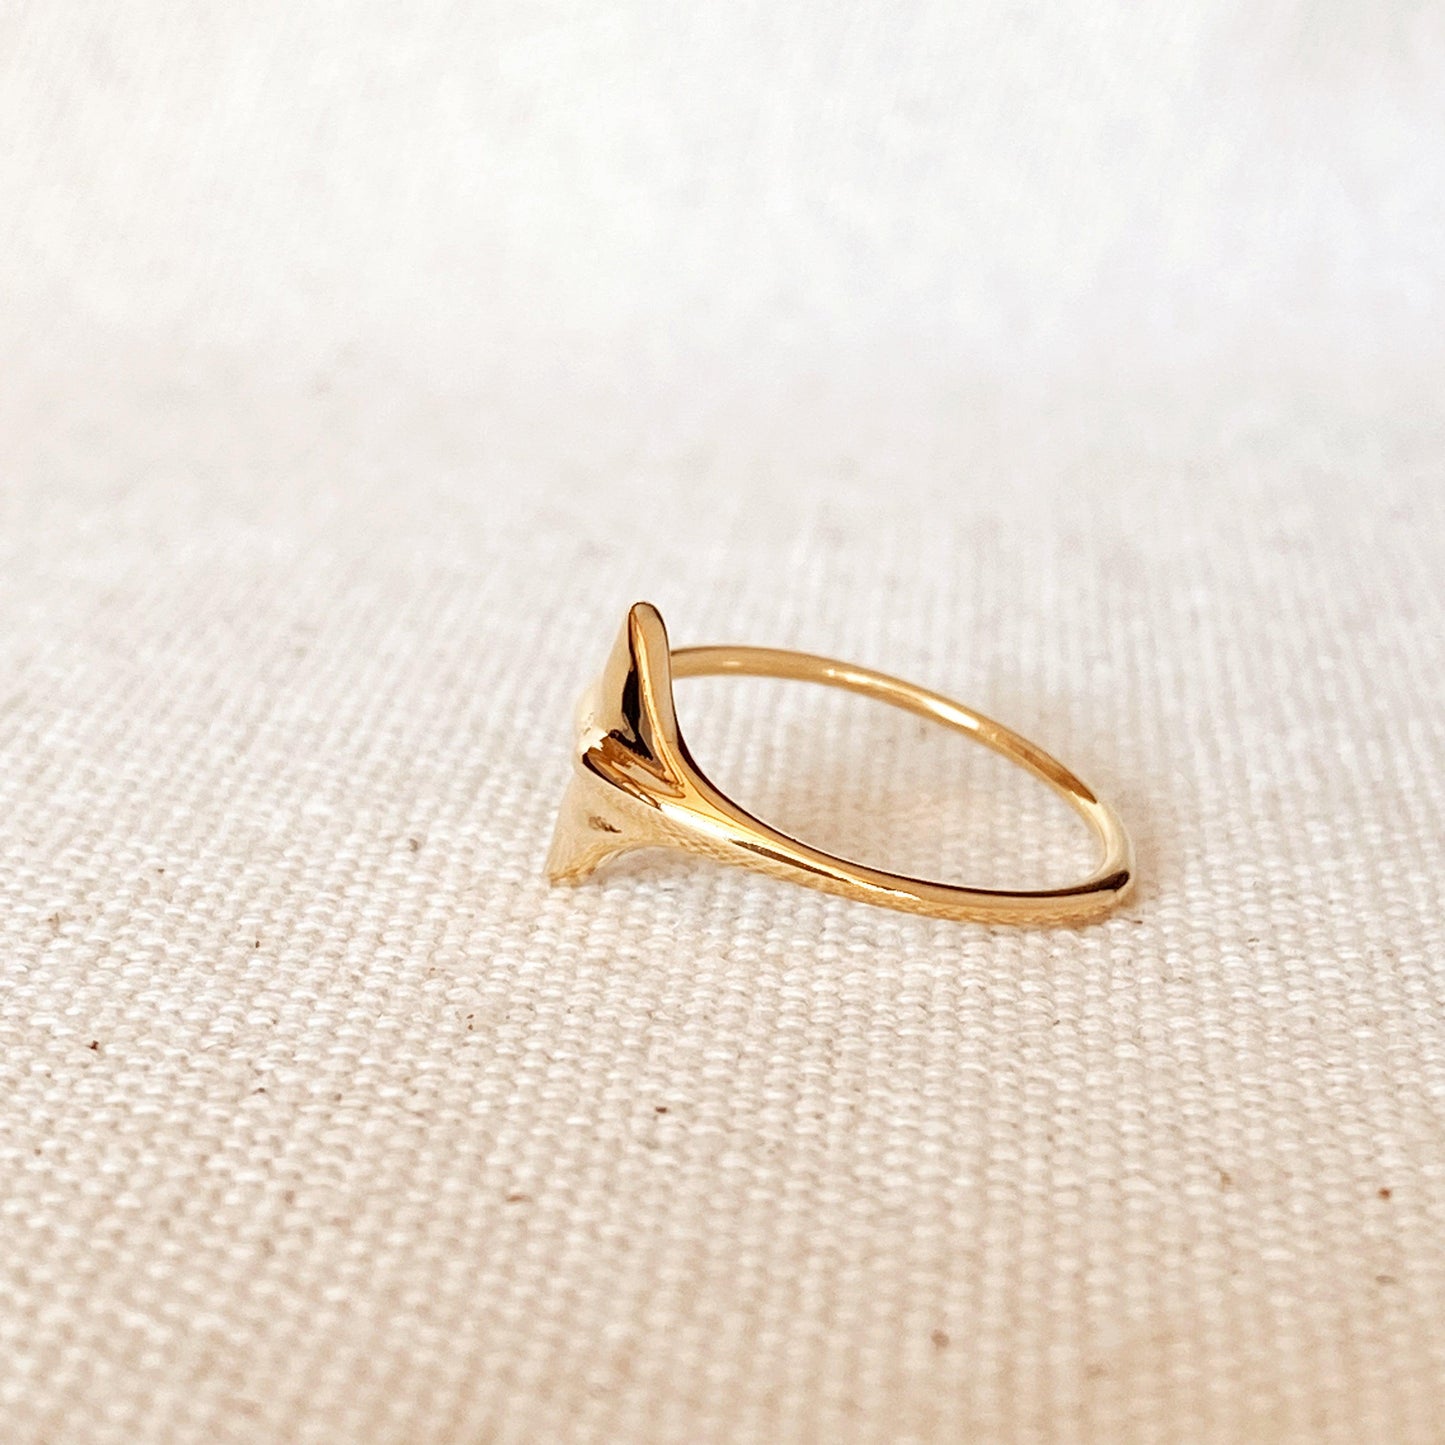 GoldFi 18k Gold Filled Mermaid Tail Ring